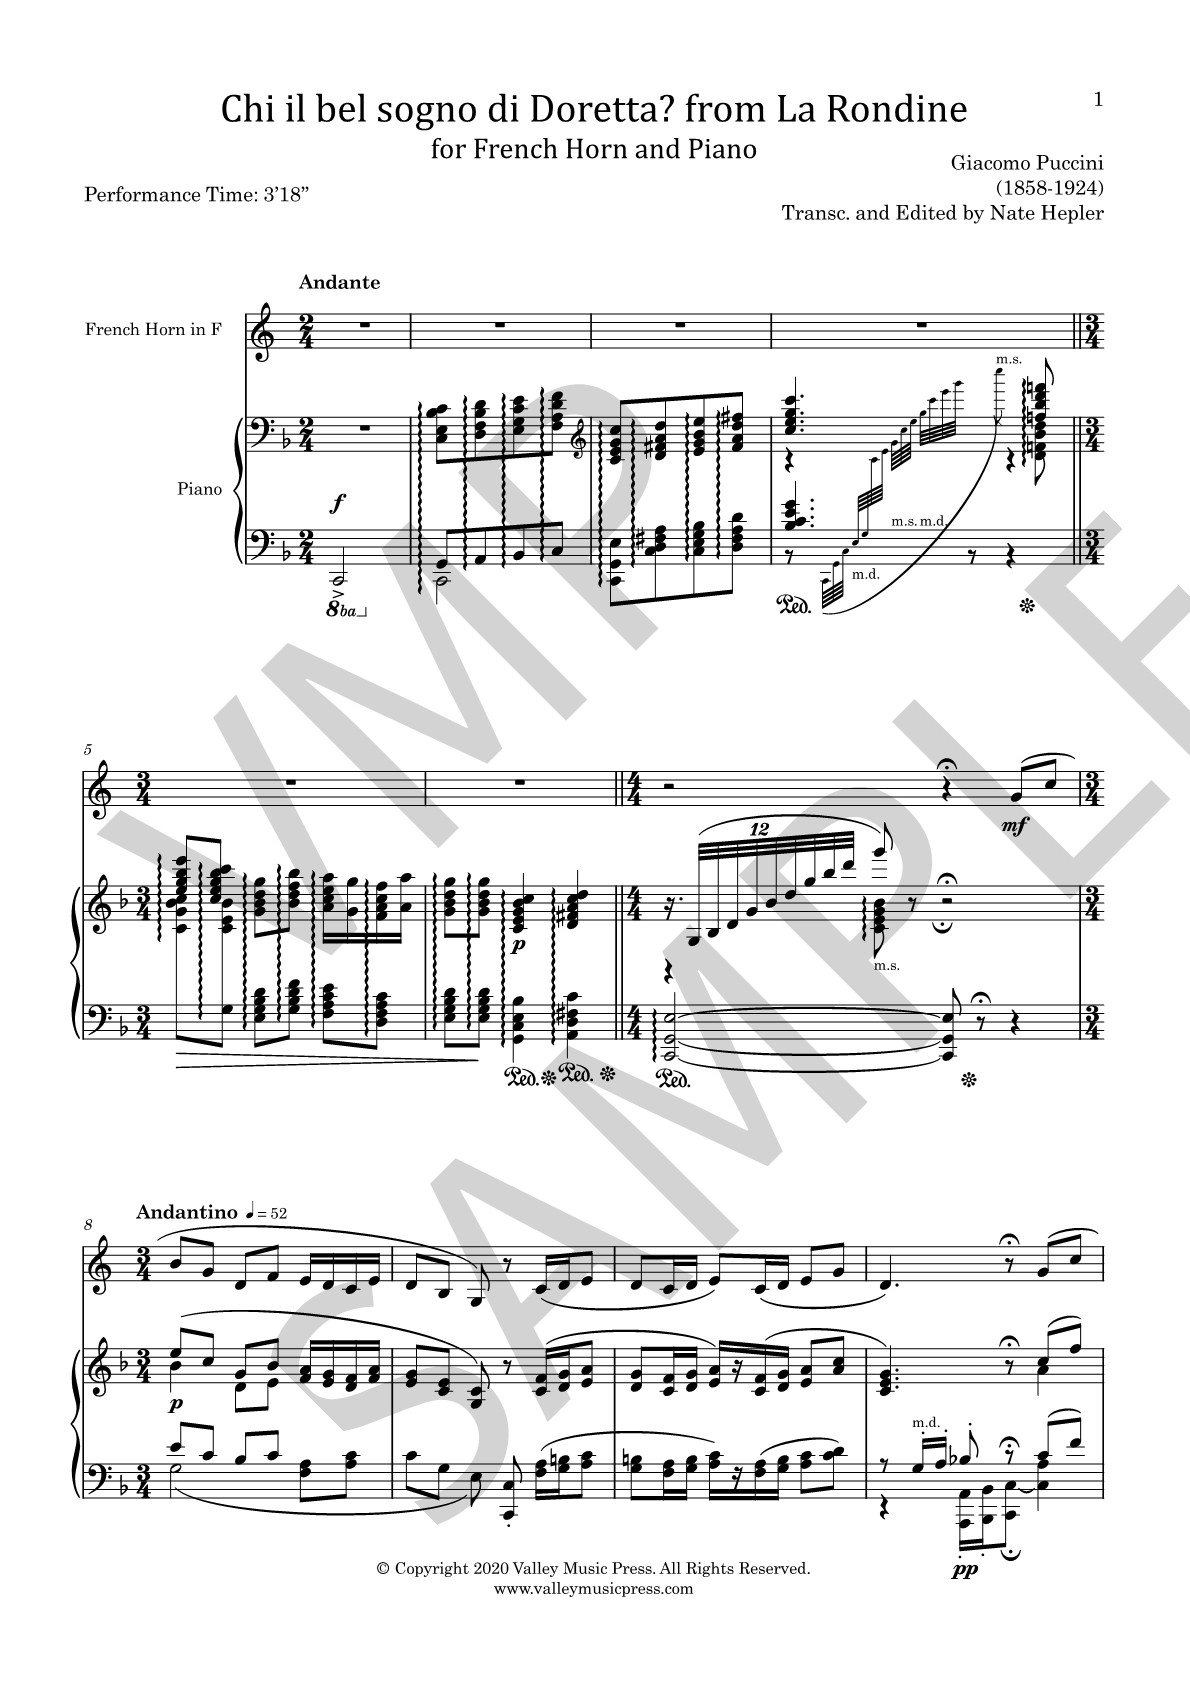 Puccini - Chi il bel sogno from La Rondine (Hrn & Piano)